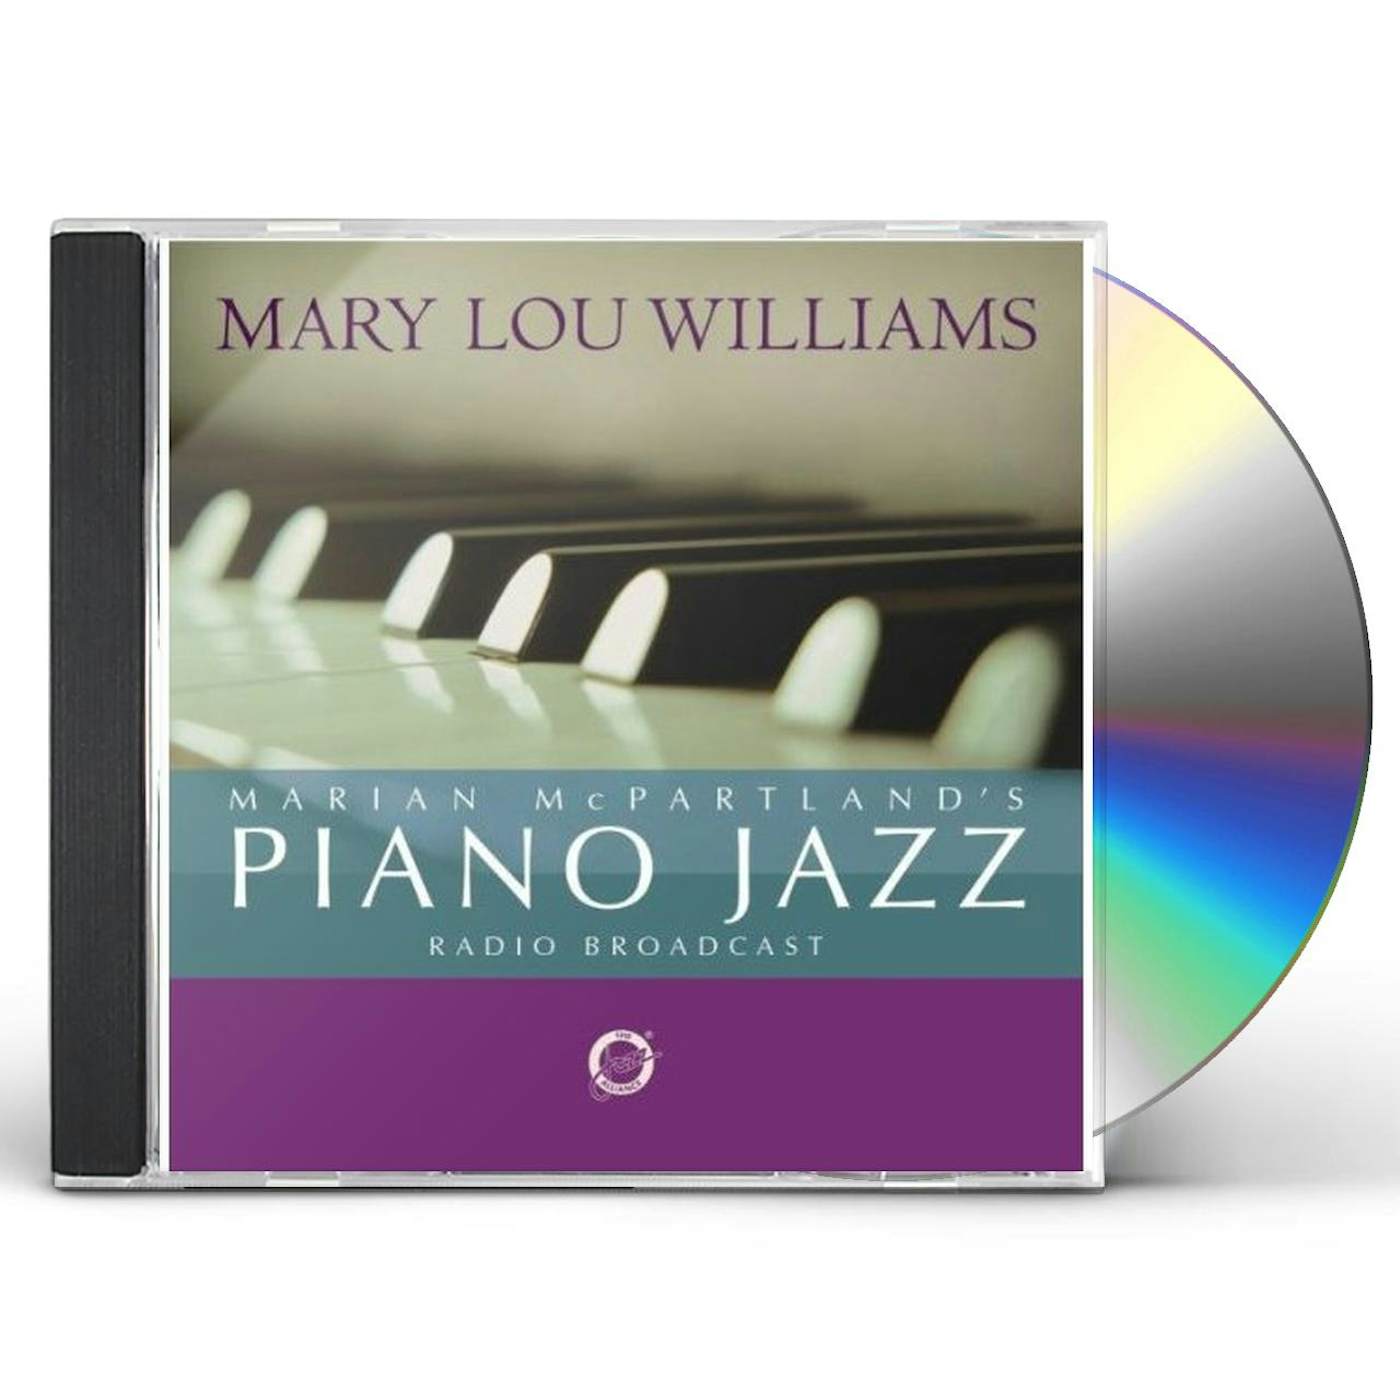 Mary Lou Williams MARIAN MCPARTLAND'S PIANO JAZZ RADIO BROADCAST CD